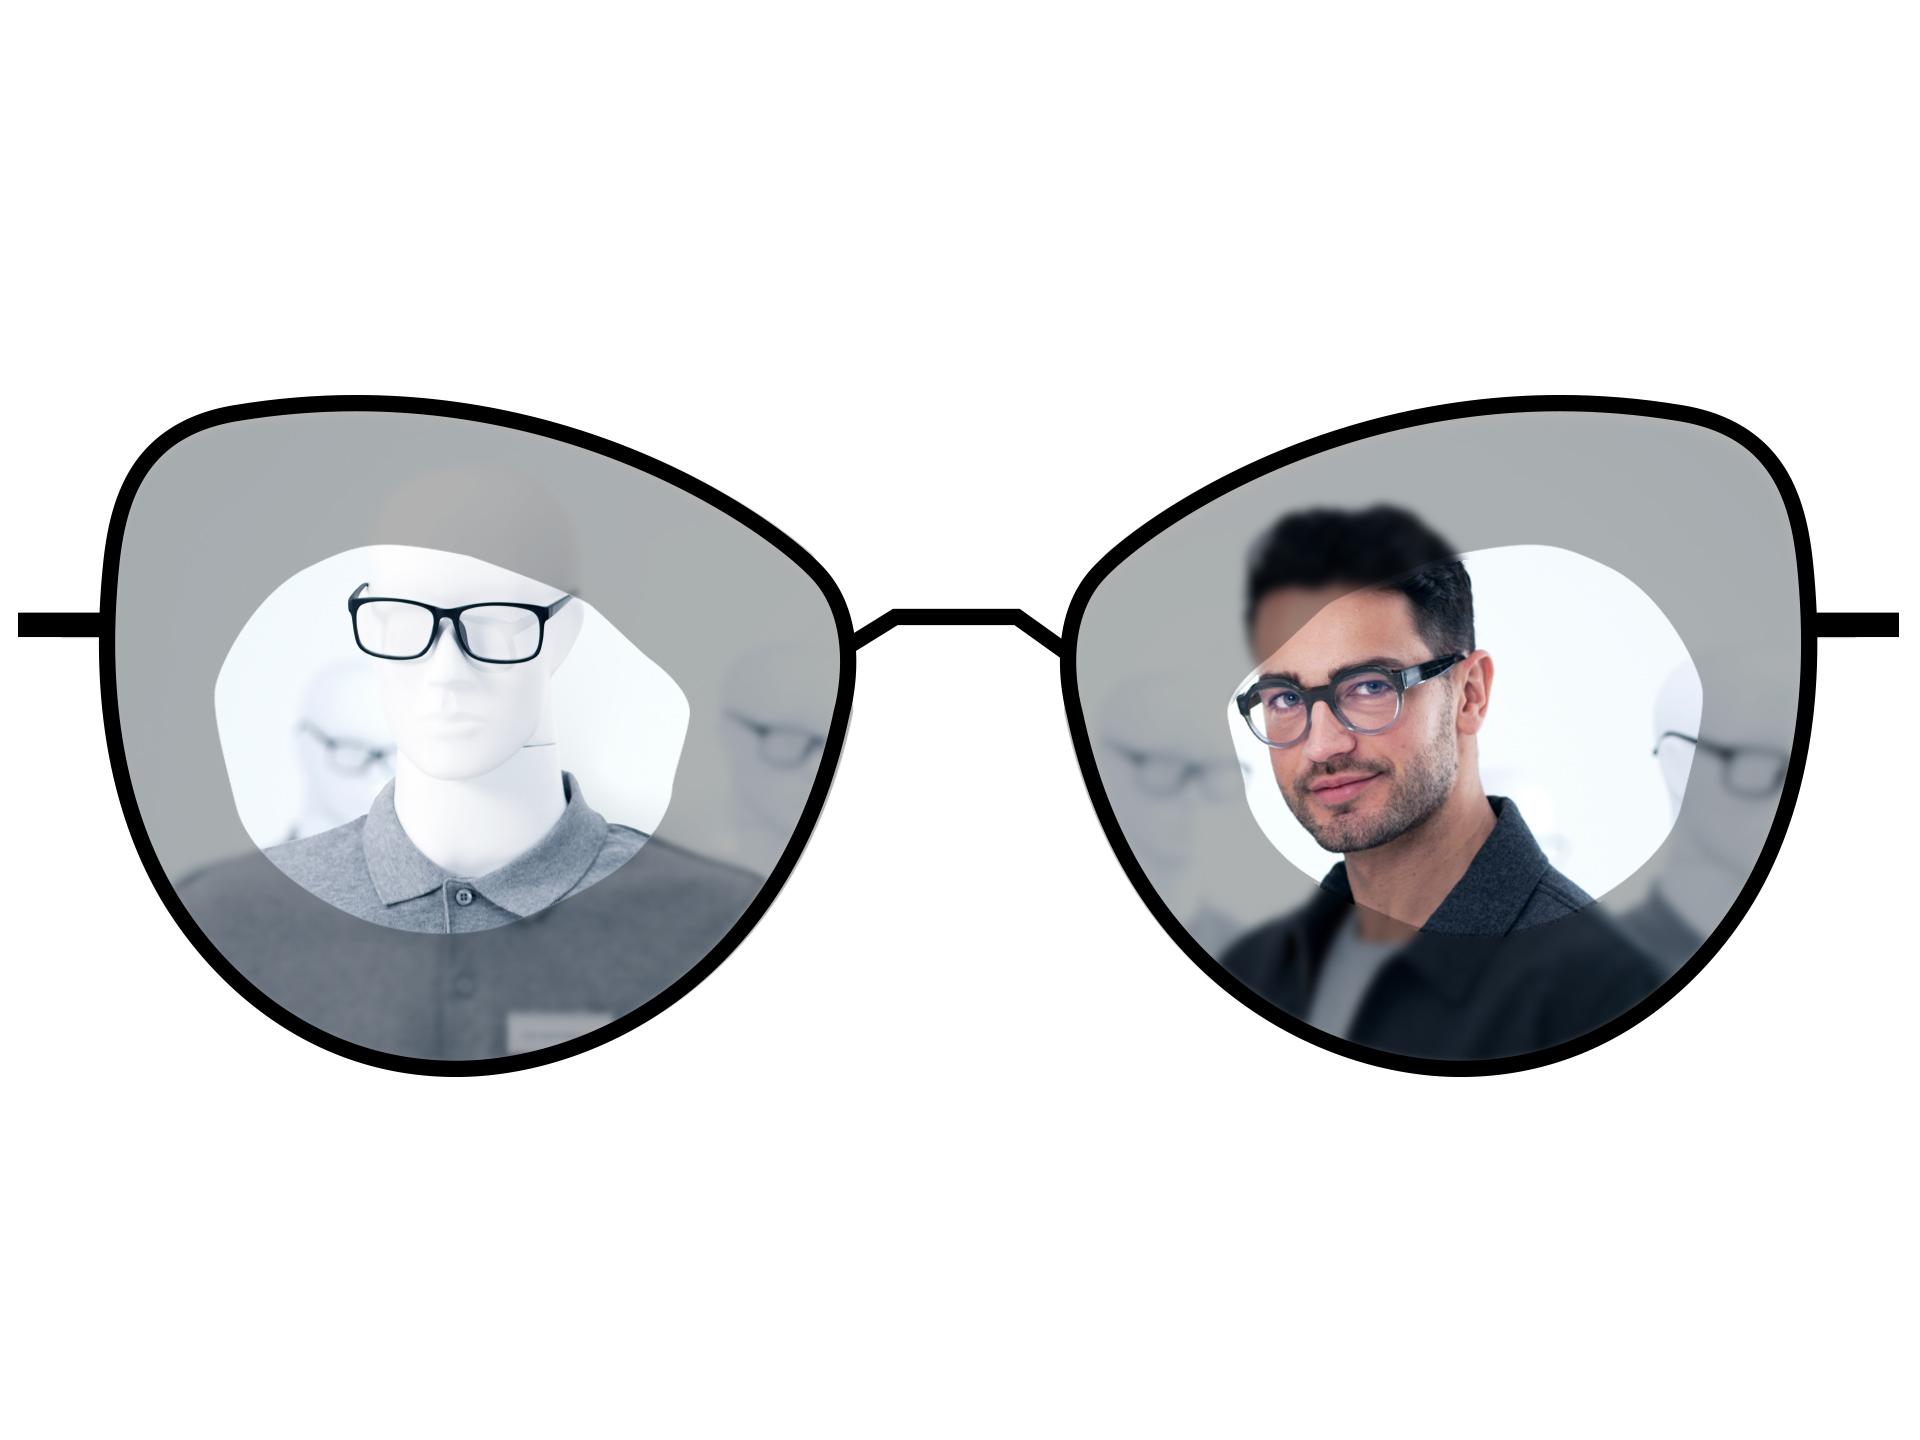 Disegno di occhiali che mostra le zone sfuocate di lenti monofocali standard rispetto alle ampie zone di visione nitide delle lenti monofocali ZEISS ClearView